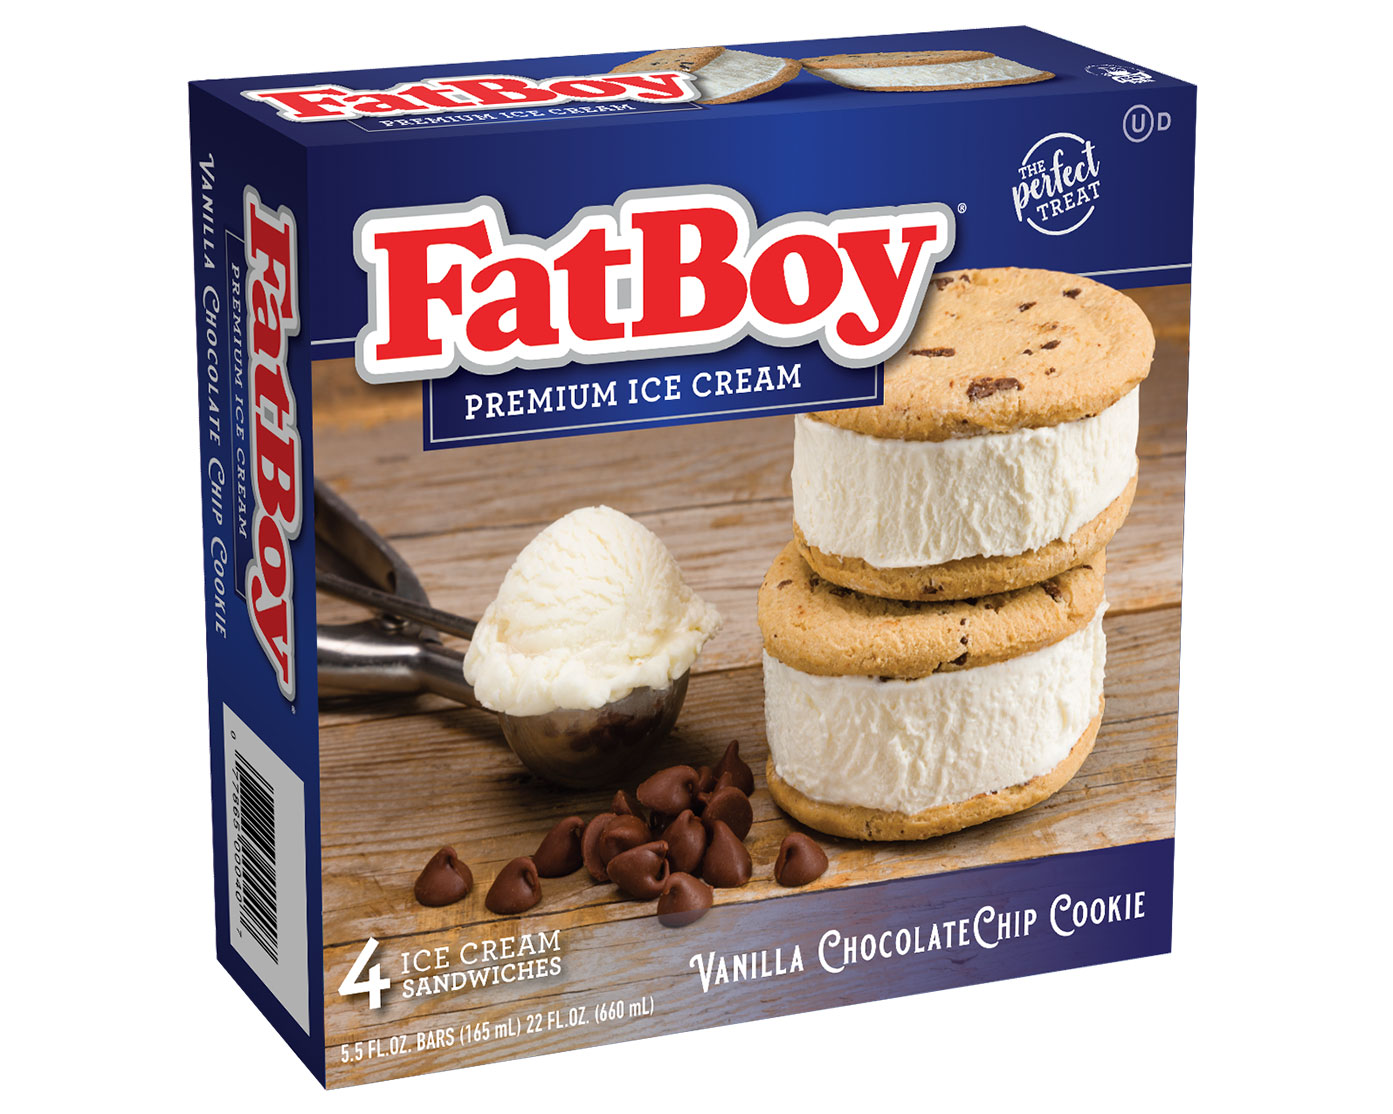 FatBoy Chocolate Chip Cookie Sandwich